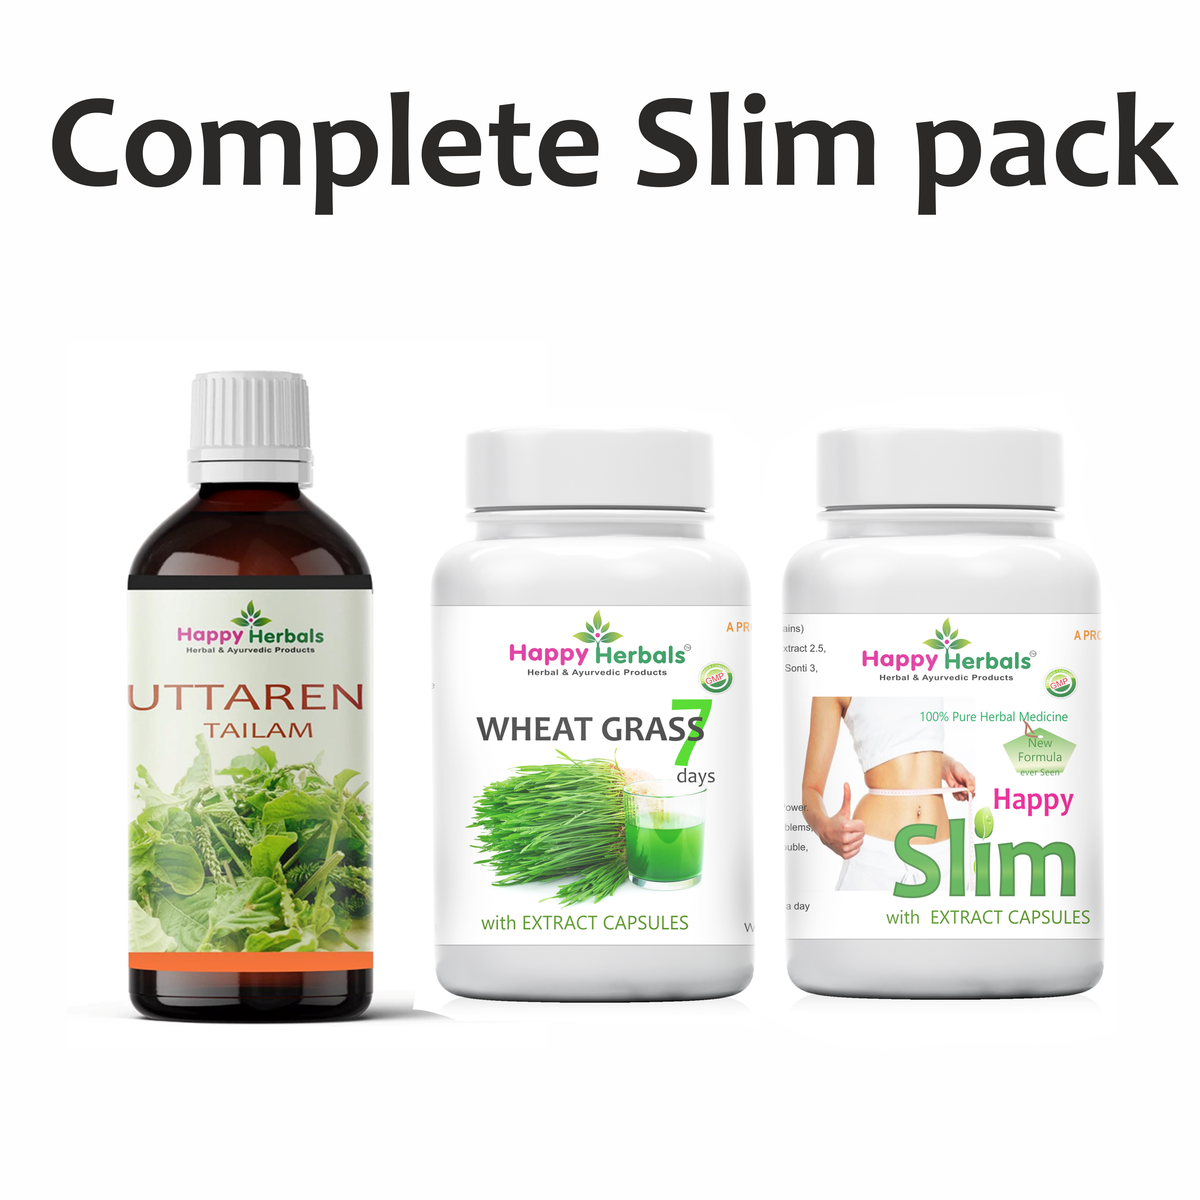 Complete Slim Pack